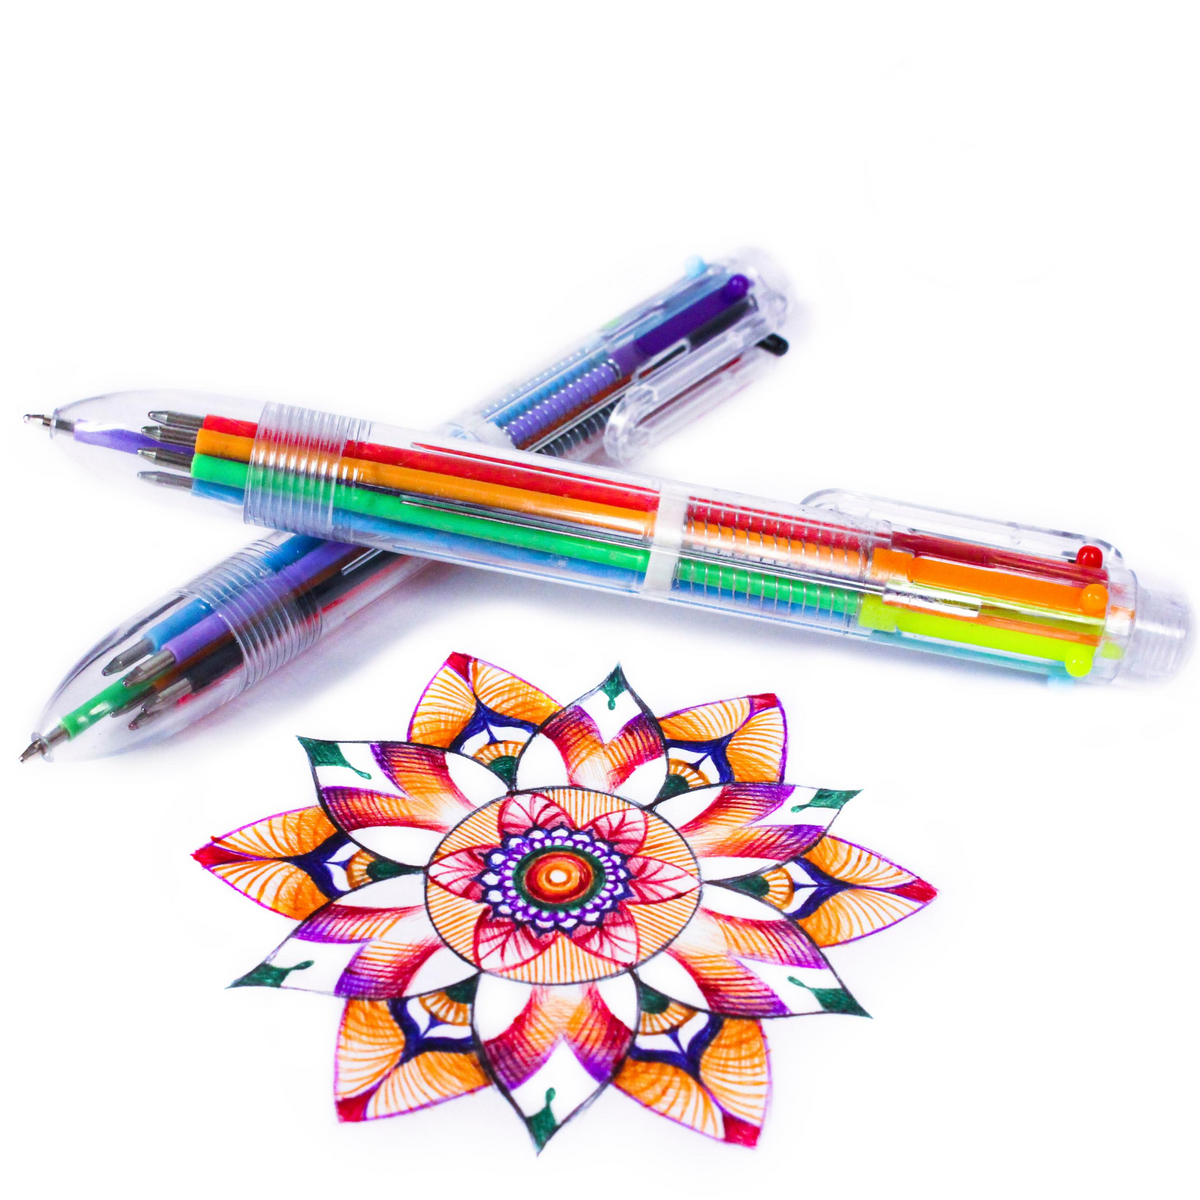 Hieno Supplies Multicolor Pens